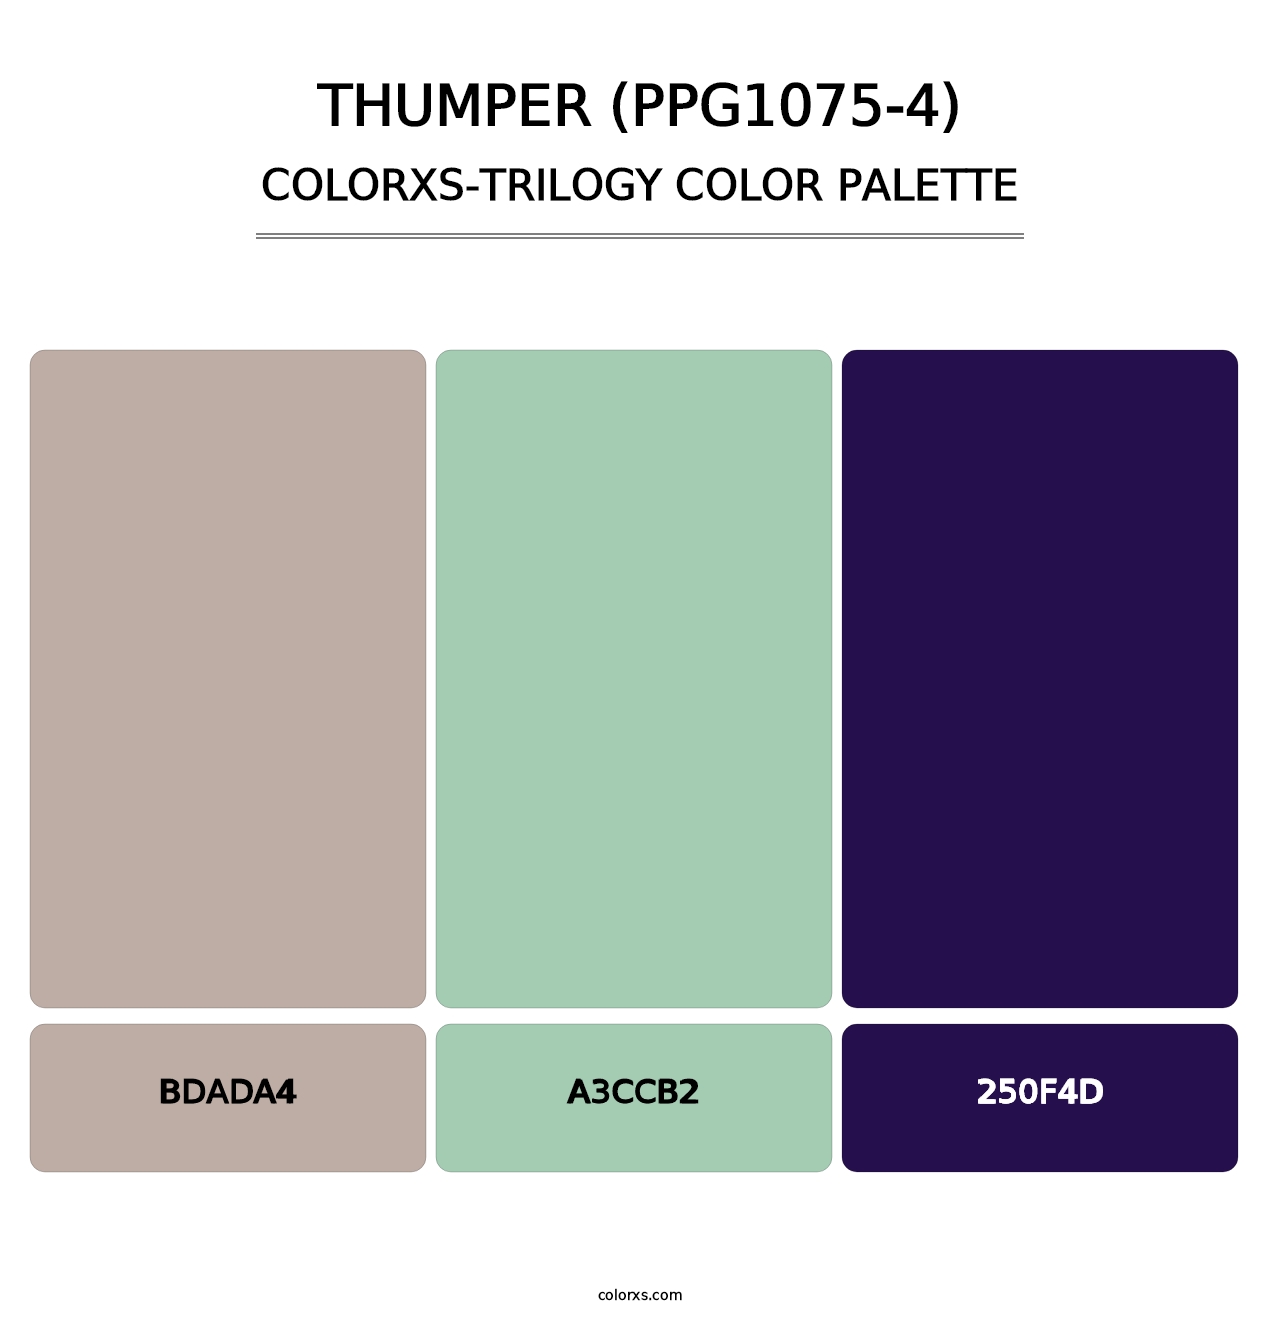 Thumper (PPG1075-4) - Colorxs Trilogy Palette